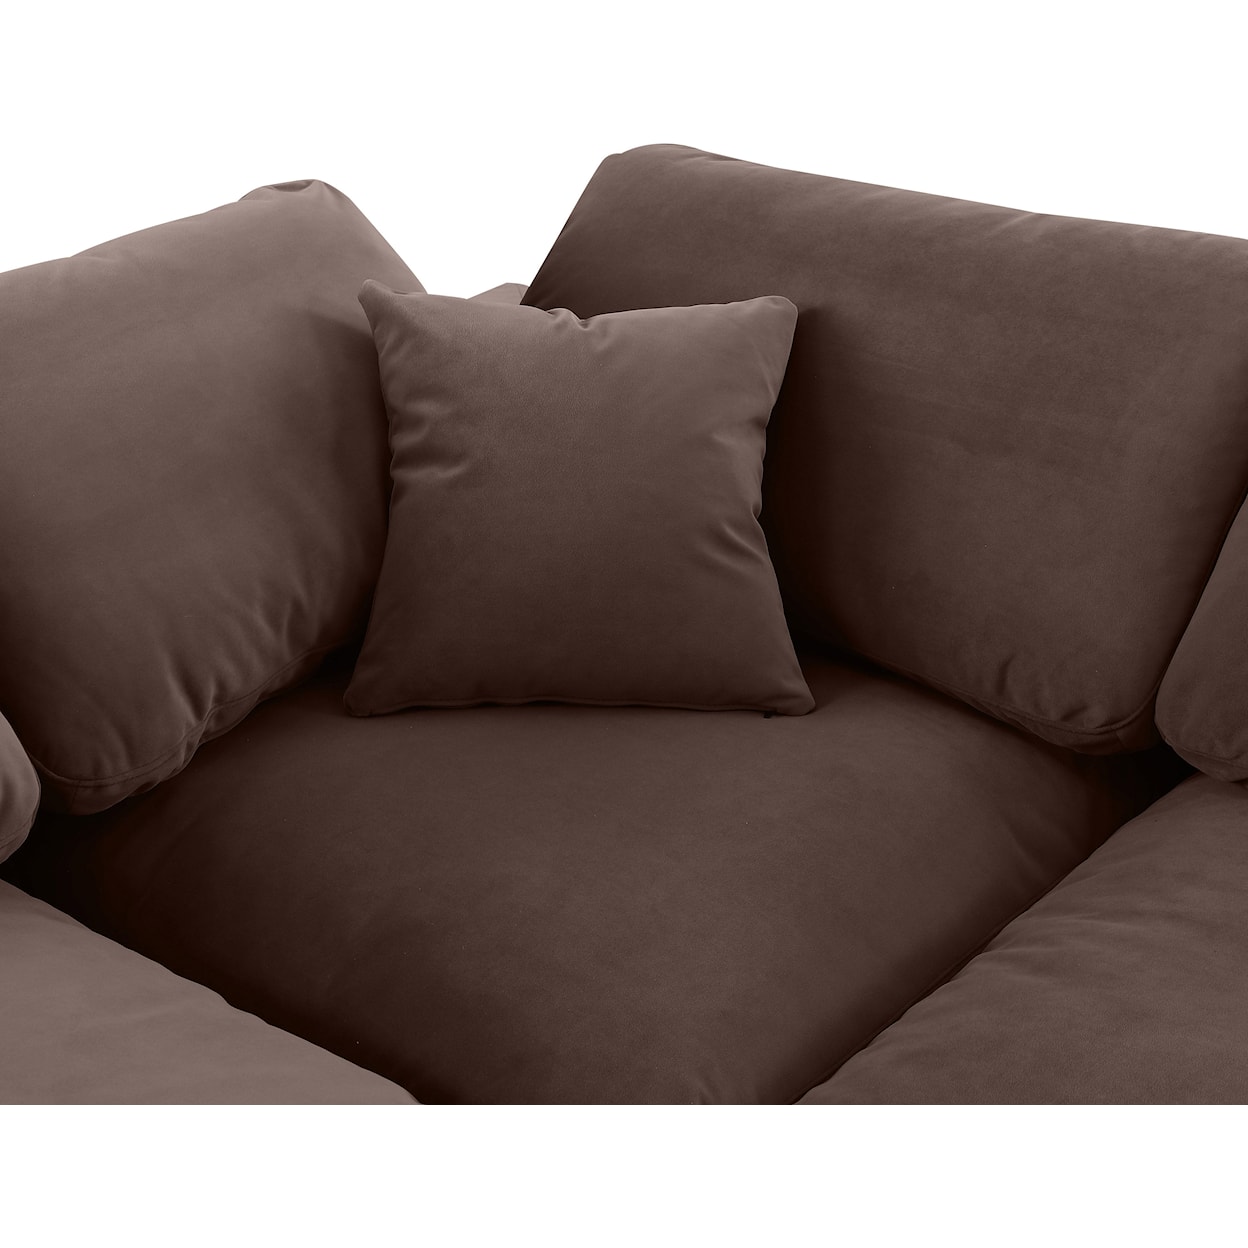 Meridian Furniture Comfy Modular Sofa